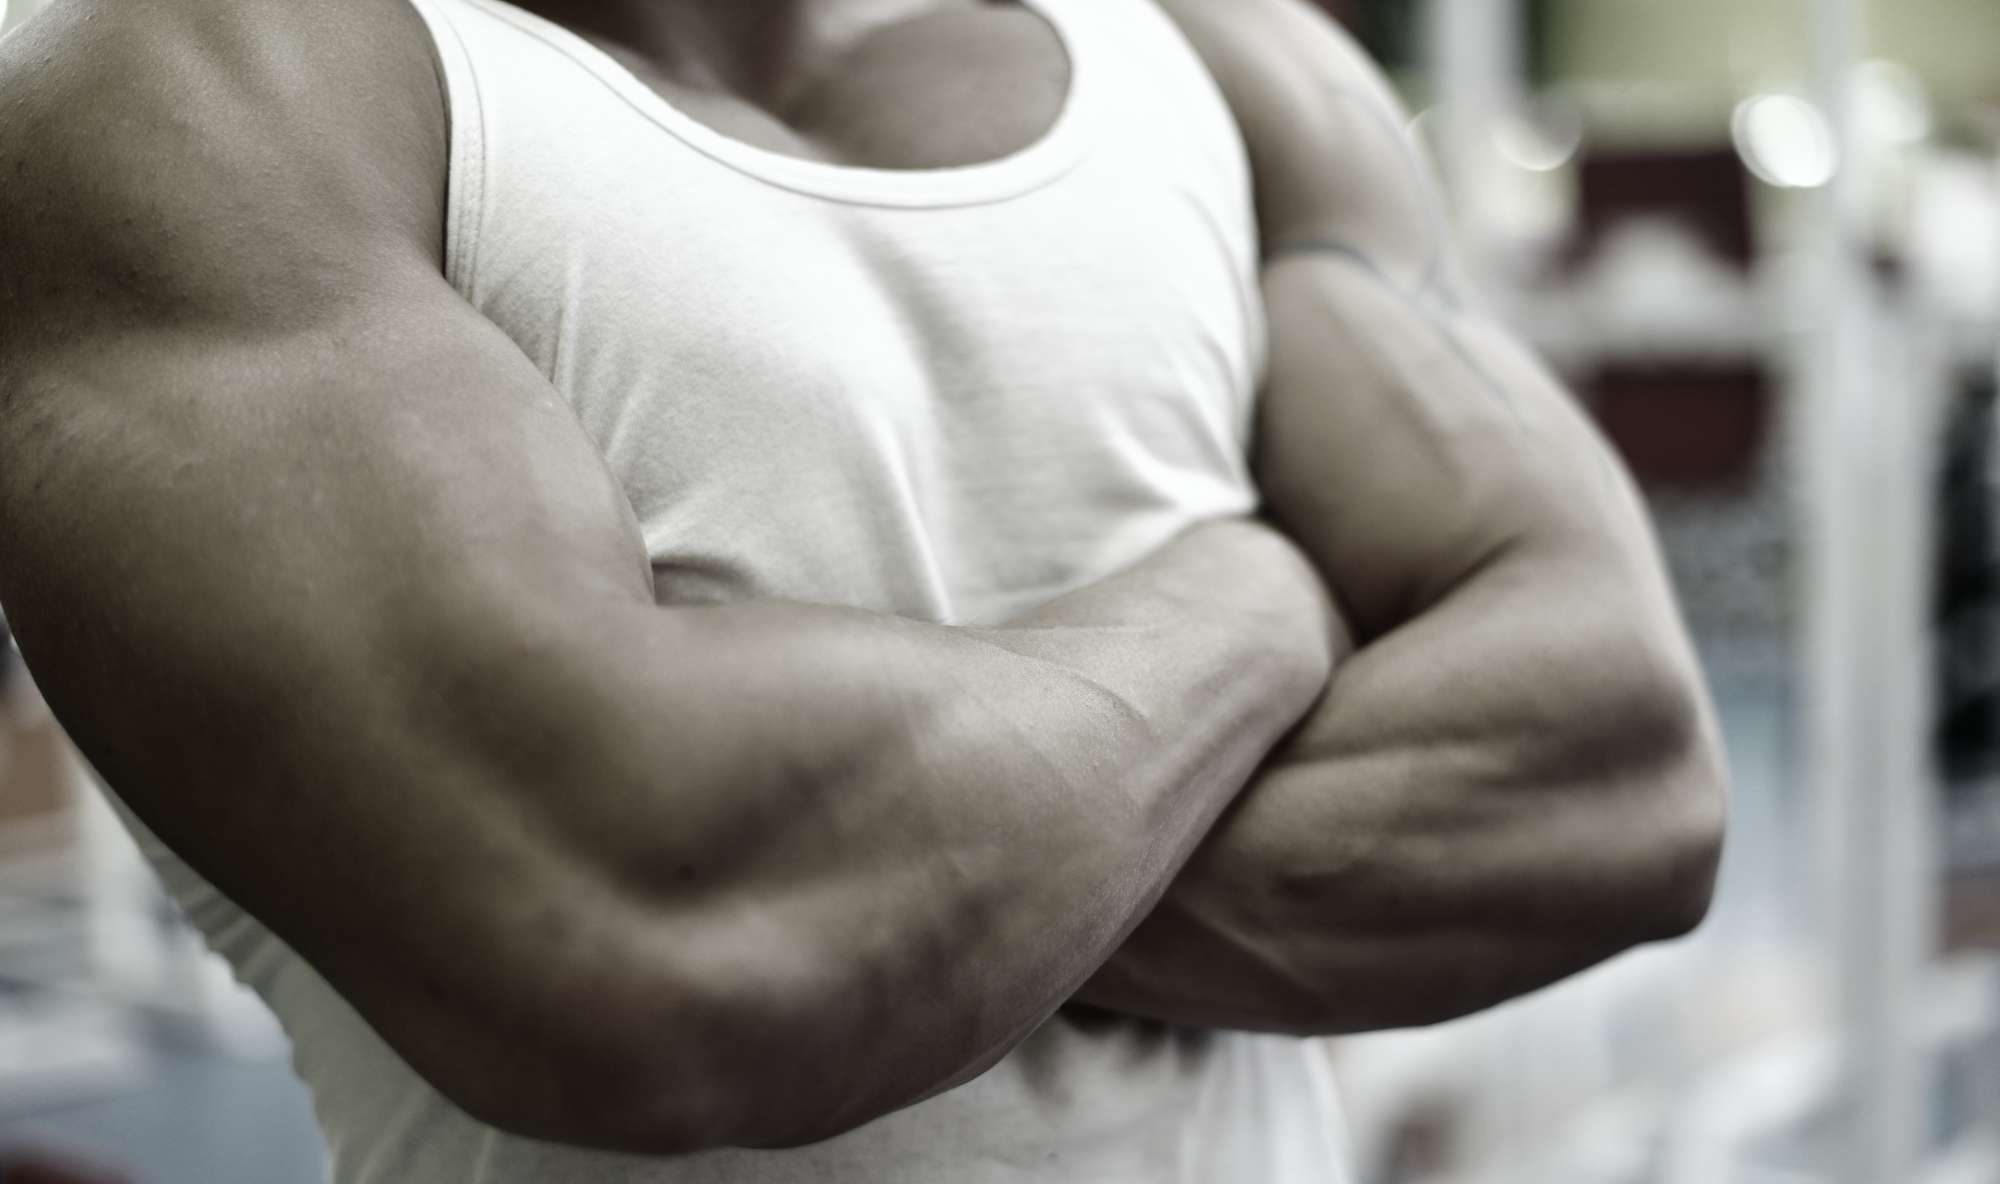 想让肌肉变得更大、更饱满，每个肌肉群一周要练几次？